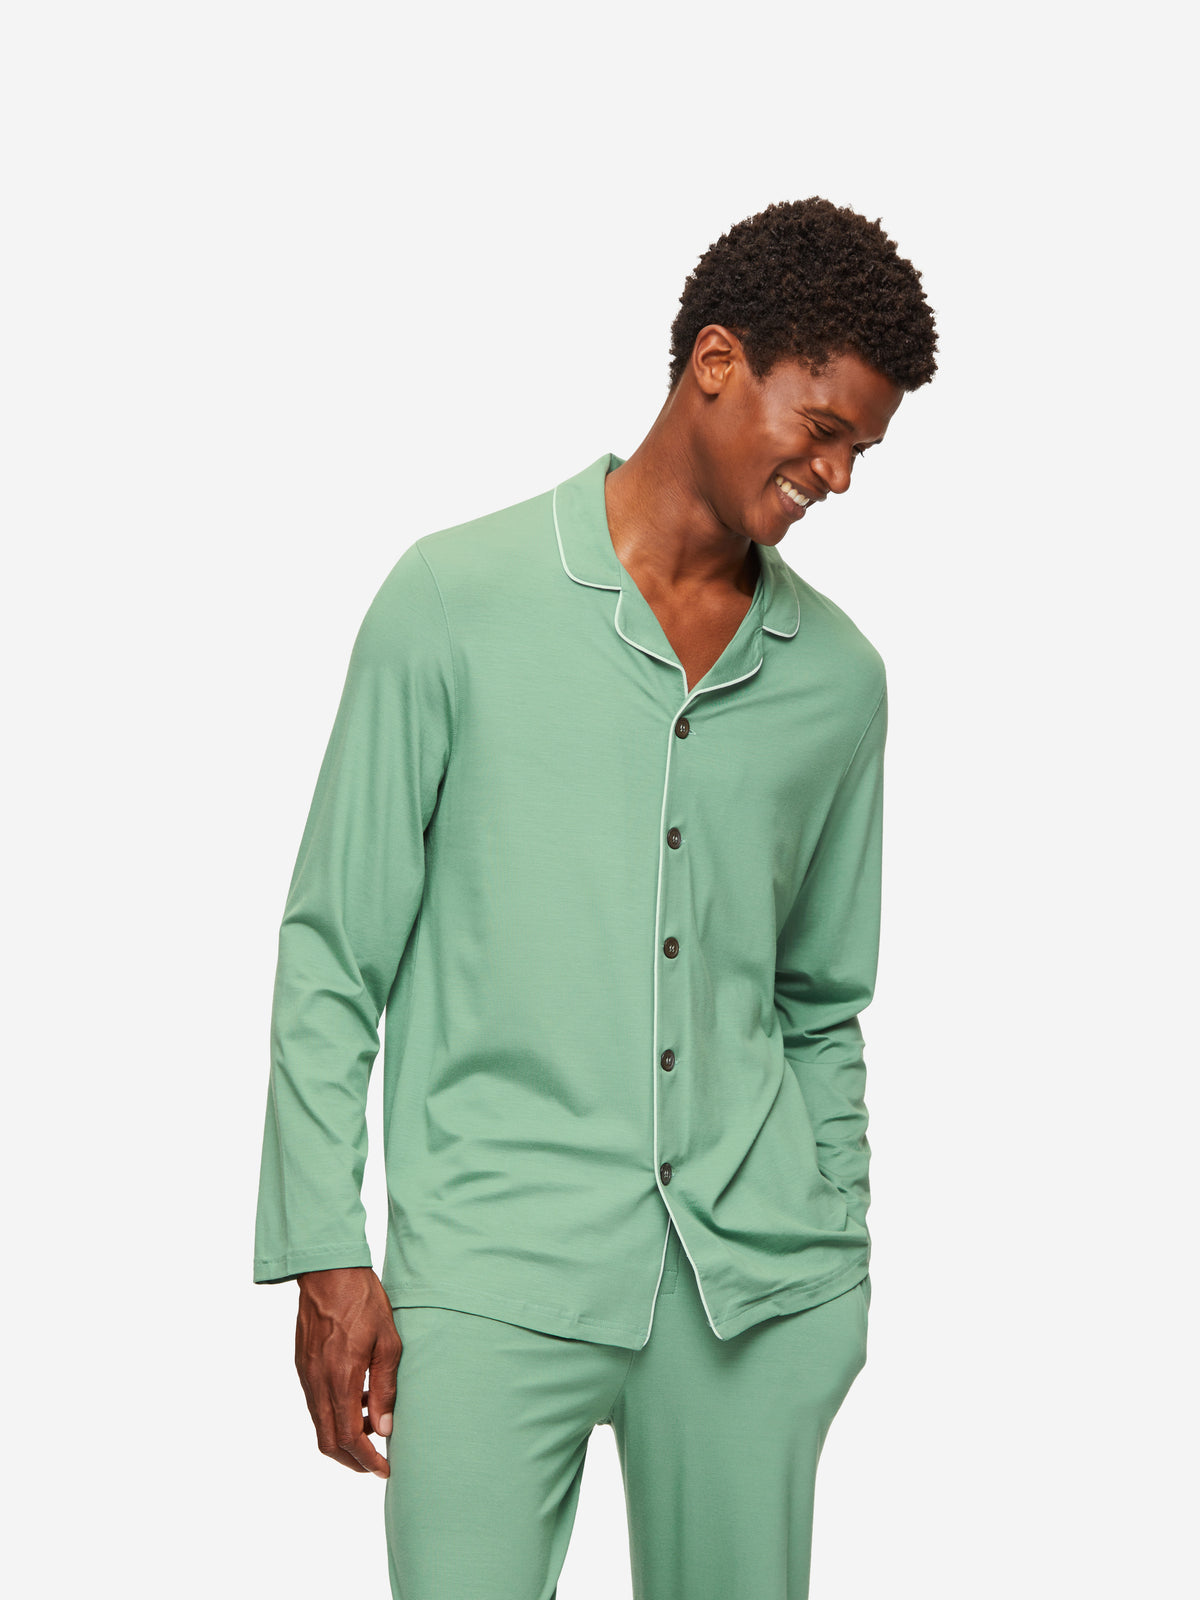 Men's Pyjamas Basel Micro Modal Stretch Sage Green